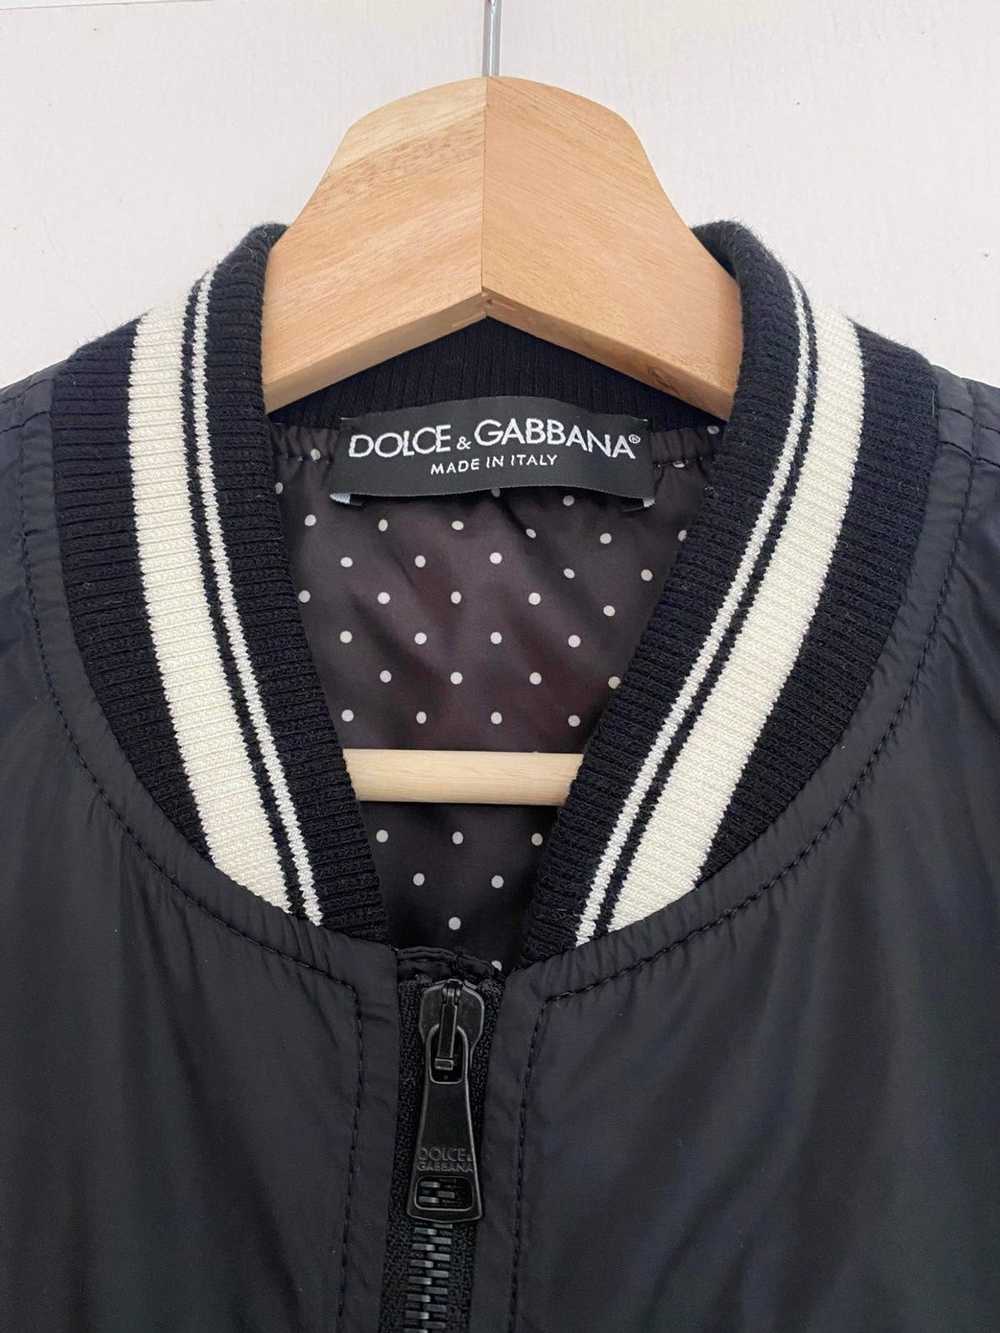 Dolce & Gabbana Dolce & Gabbana spring 2014 jacket - image 2